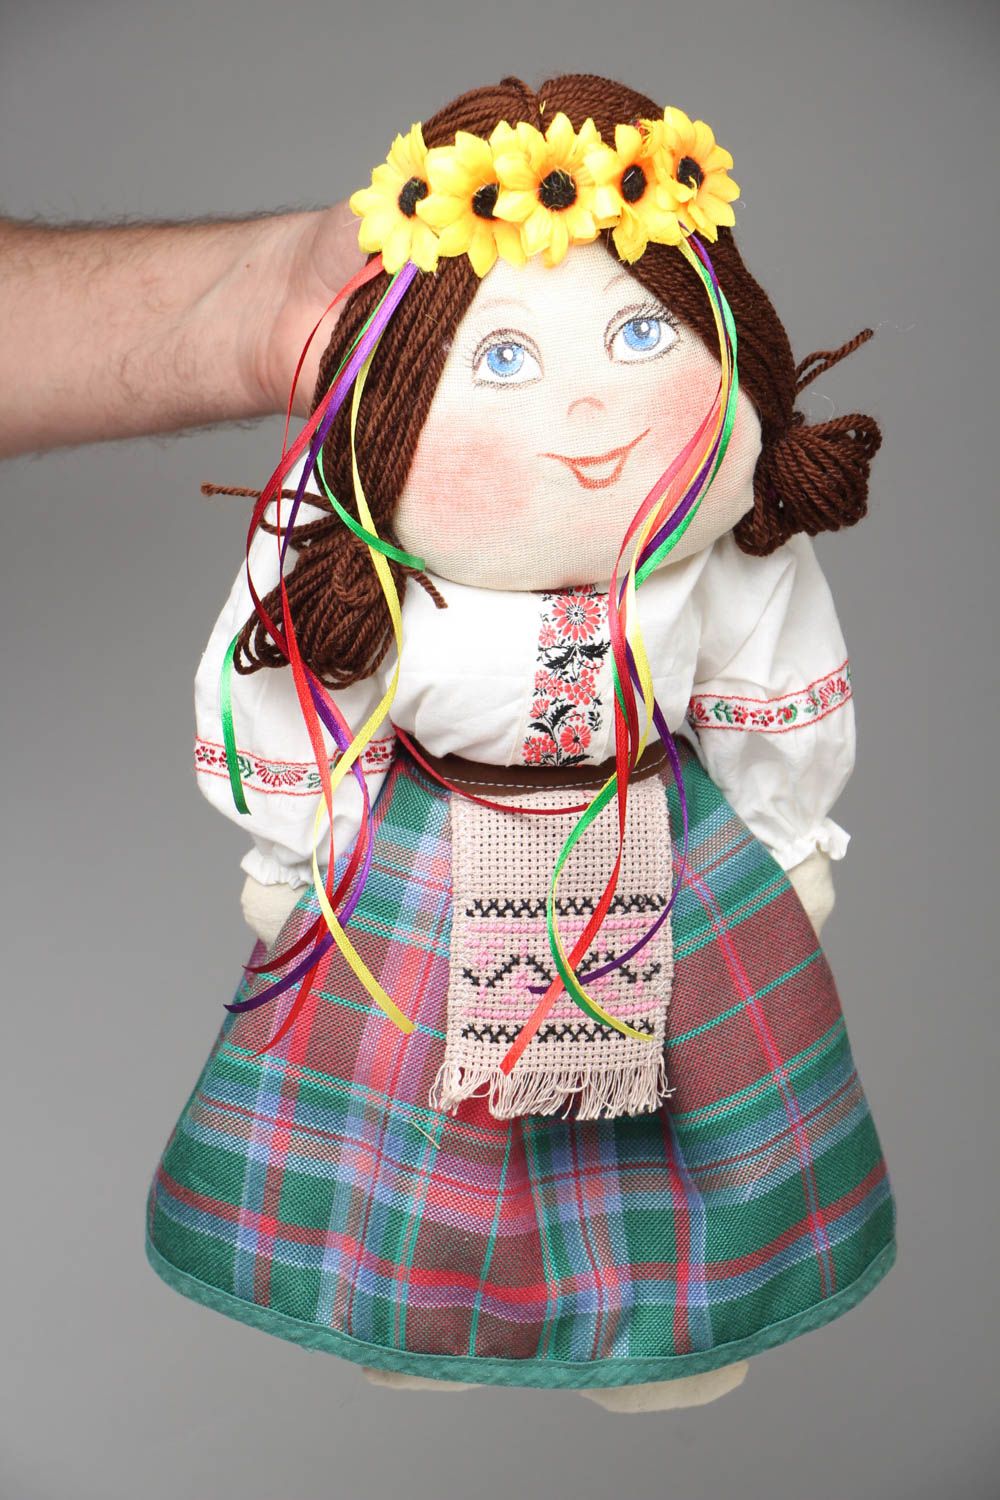 Textil Puppe mit Kranz foto 4